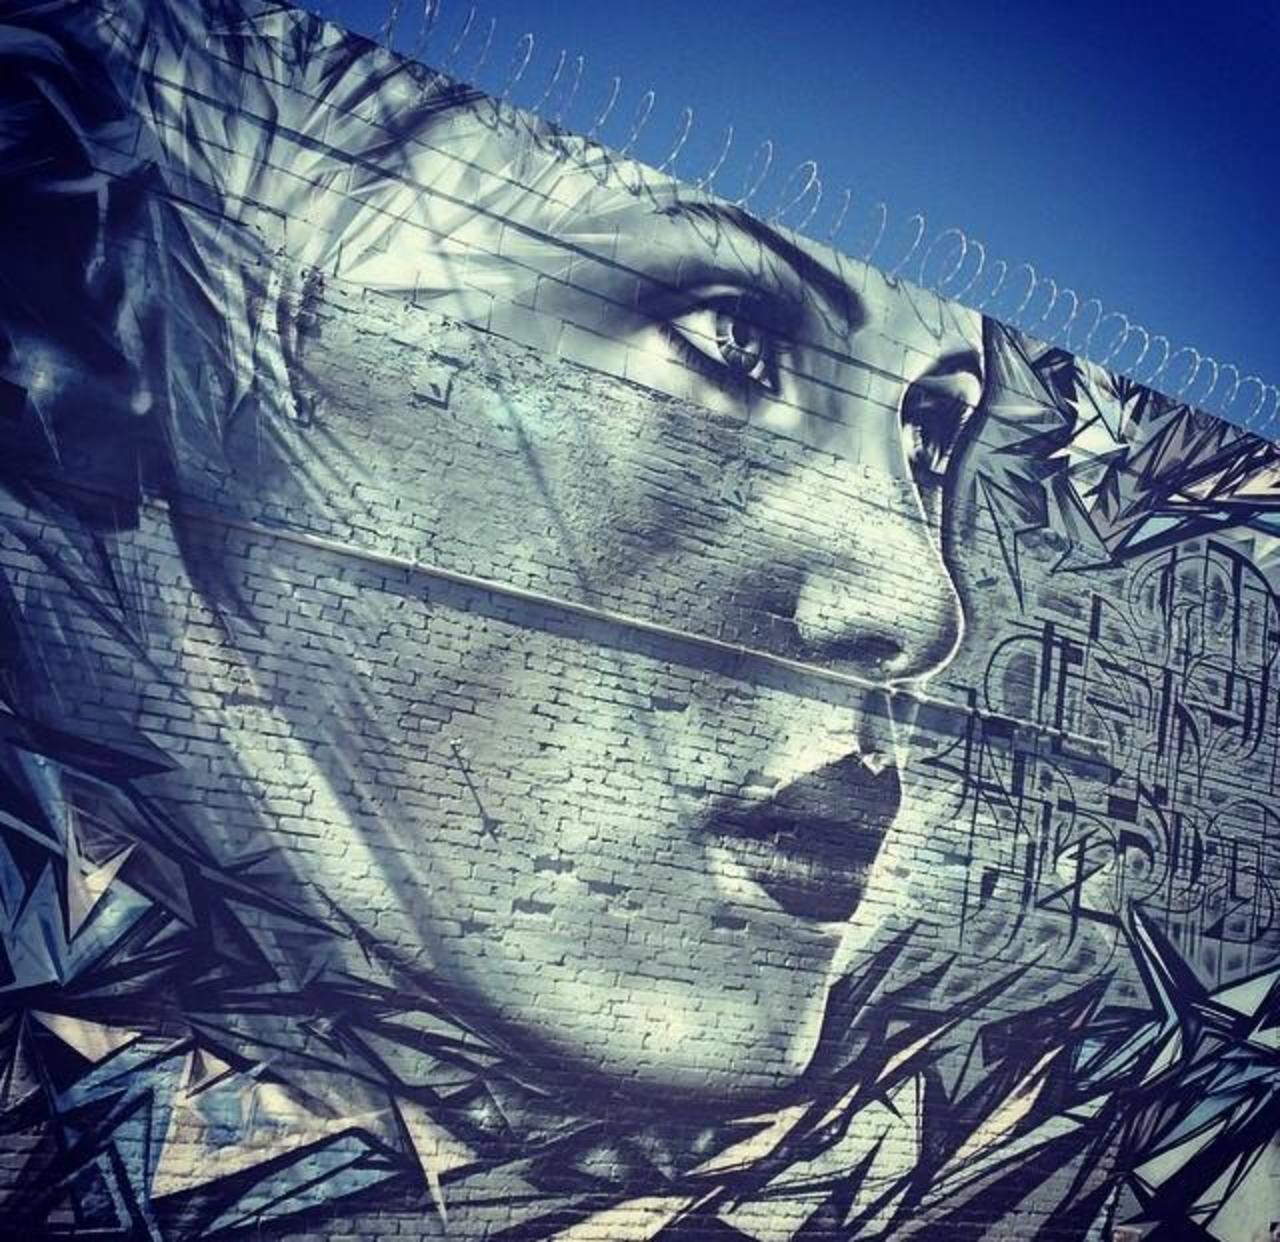 Artist @StarFighterA fabulous new Street Art mural located in Los Angeles. #art #mural #graffiti #streetart http://t.co/ILxiuL8U84